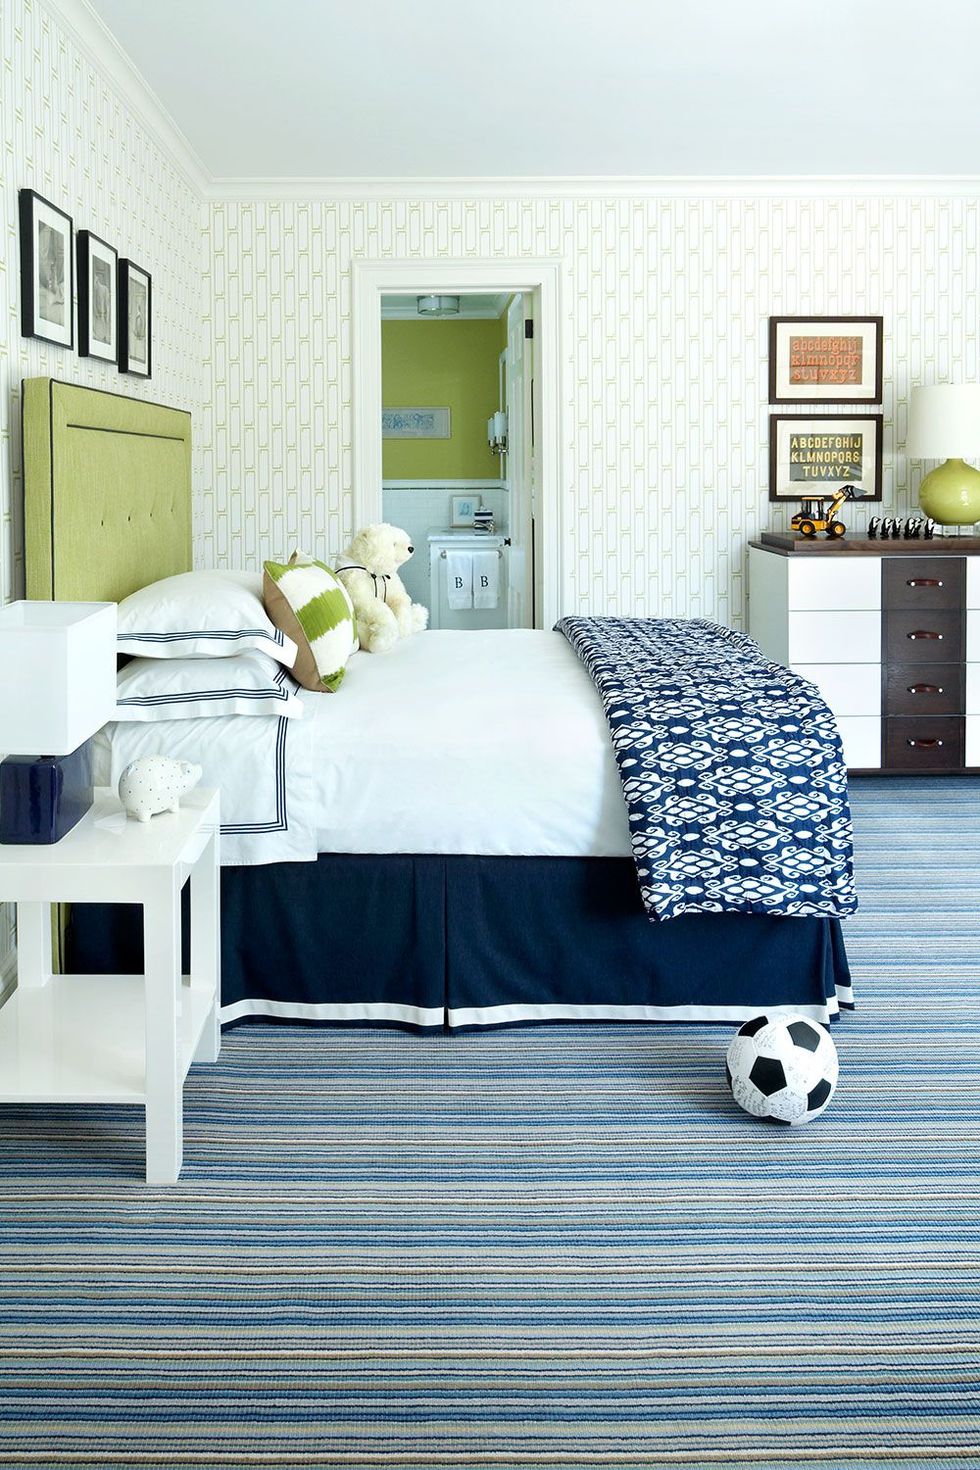 Bedroom, Furniture, Bed, Bed sheet, Room, Bed frame, Blue, Bedding, Nightstand, Interior design, 